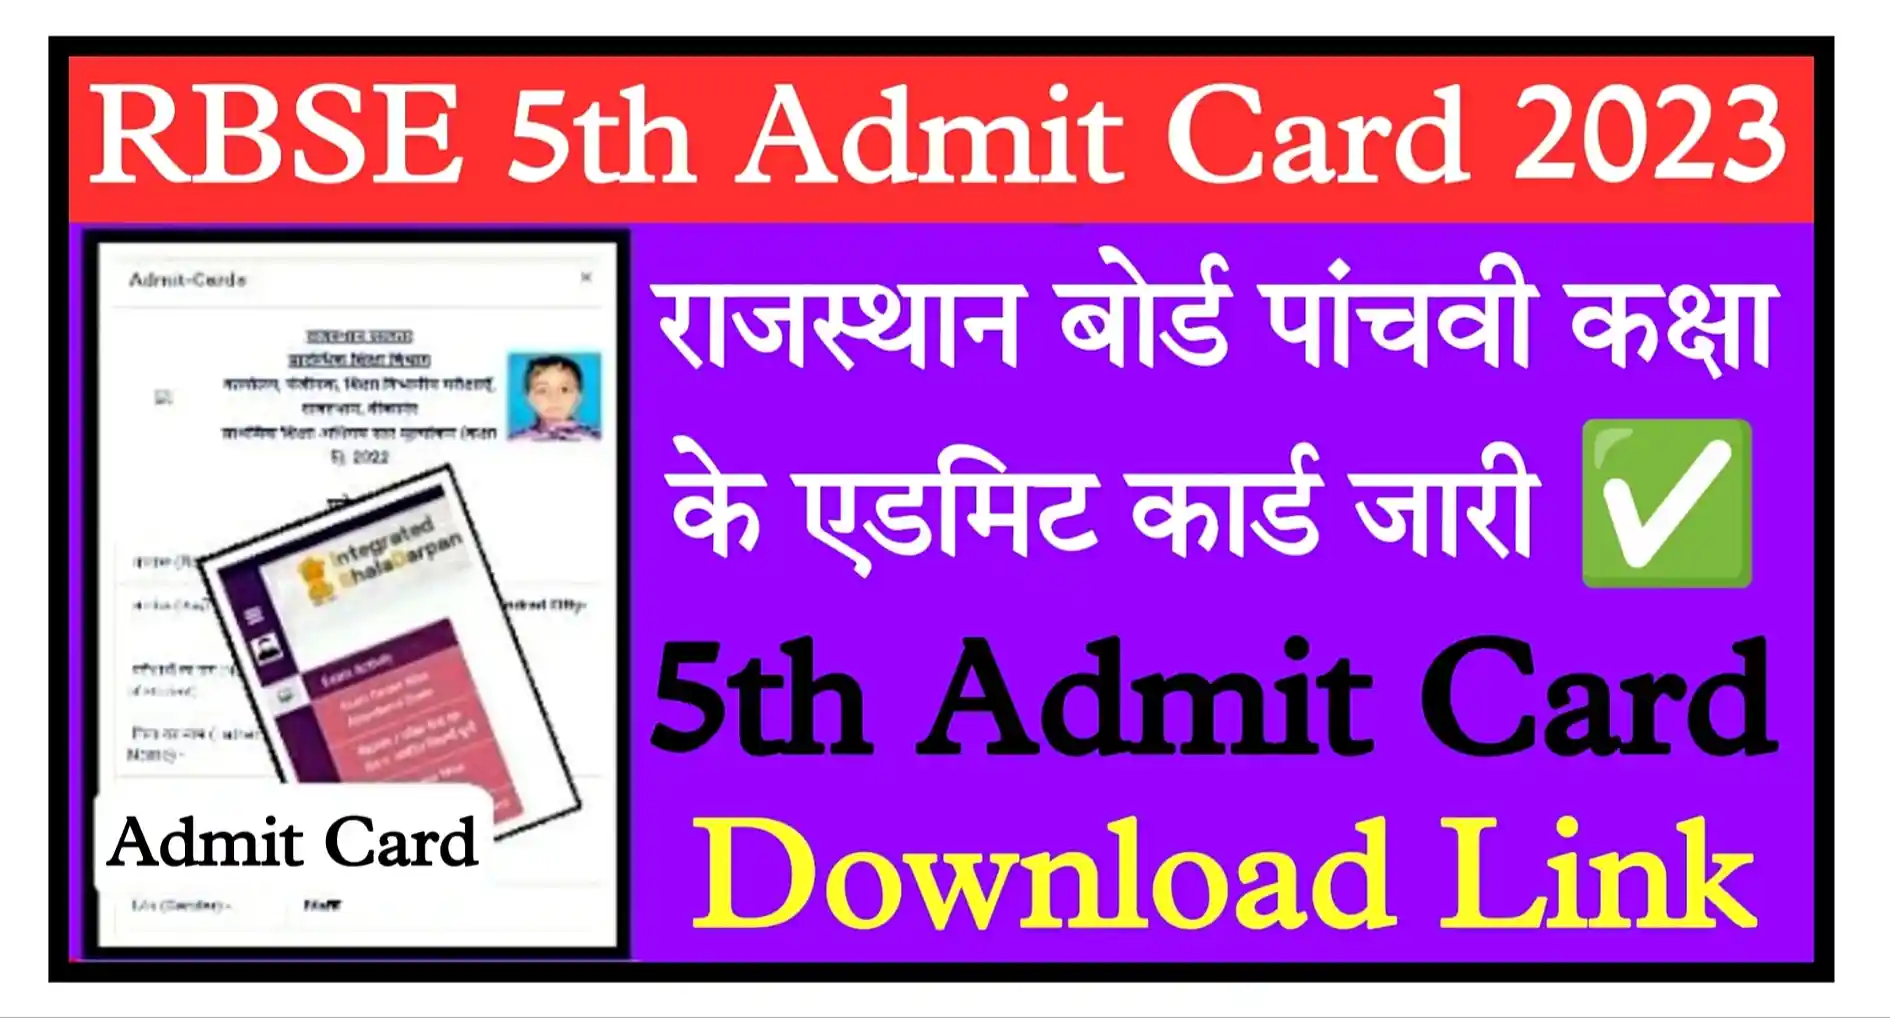 Rajasthan Board 5th Admit Card 2023 Download Link राजस्थान बोर्ड 5वी कक्षा के एडमिट कार्ड जारी, यहां से डाउनलोड करें